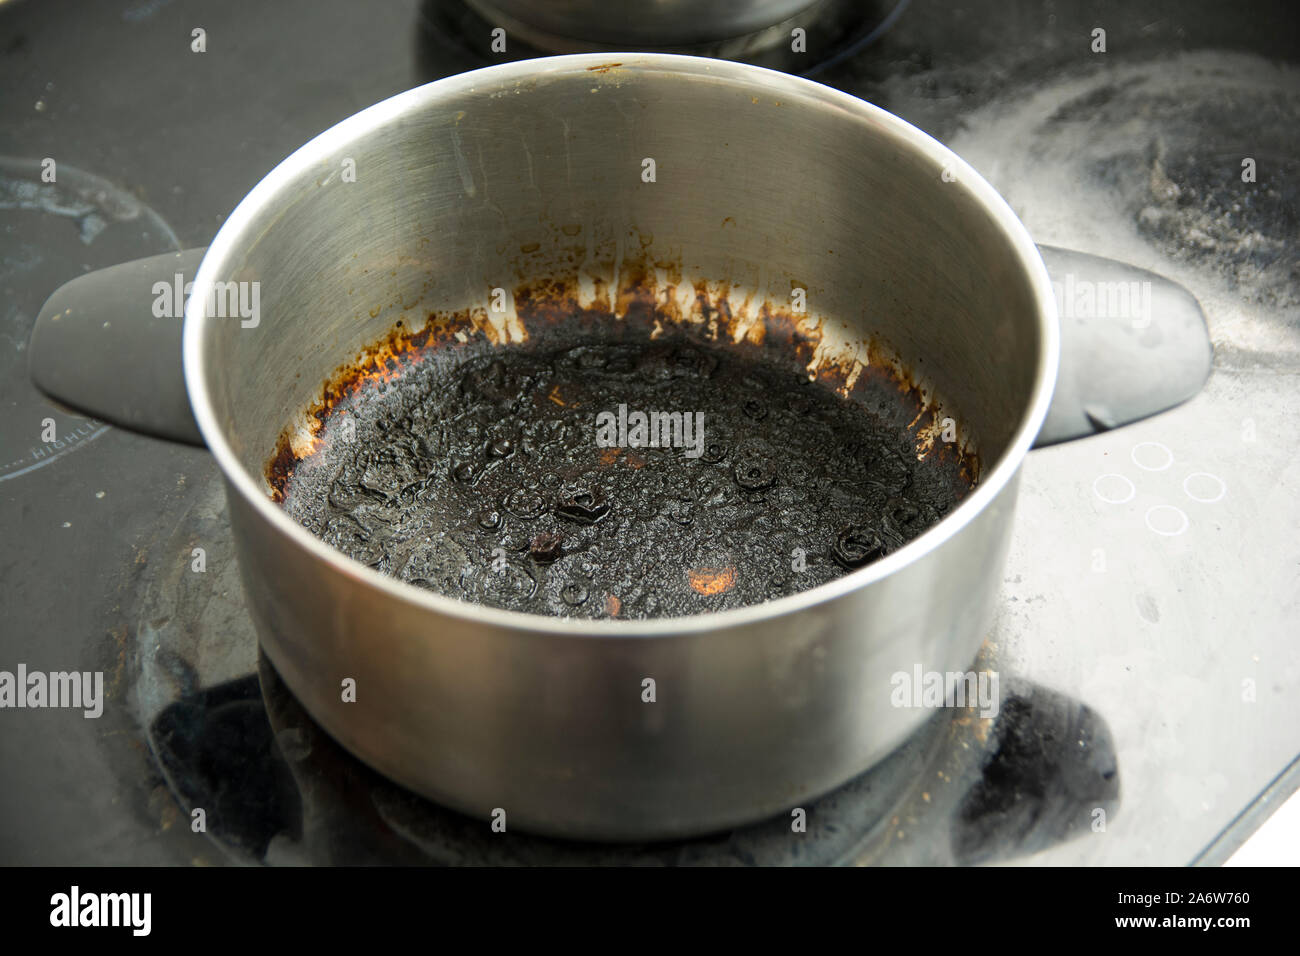 Pentola bruciata immagini e fotografie stock ad alta risoluzione - Alamy